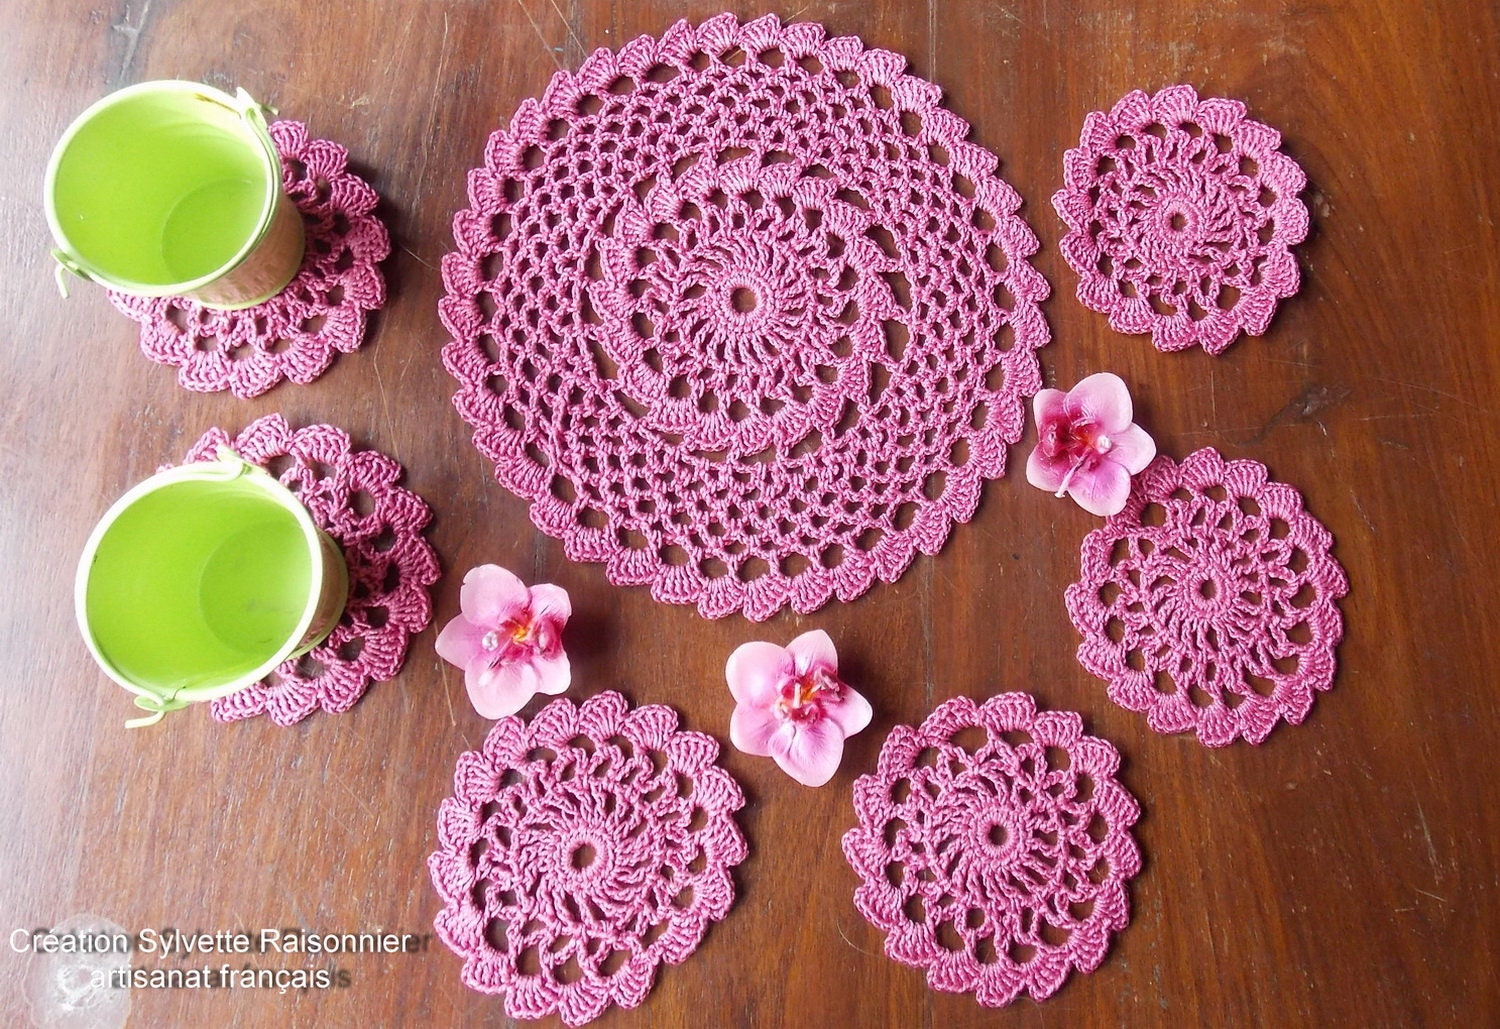 Napperons Crochet Main Artisanat Français Sous Verres Service Aperitif Rose Framboise Création Sylve